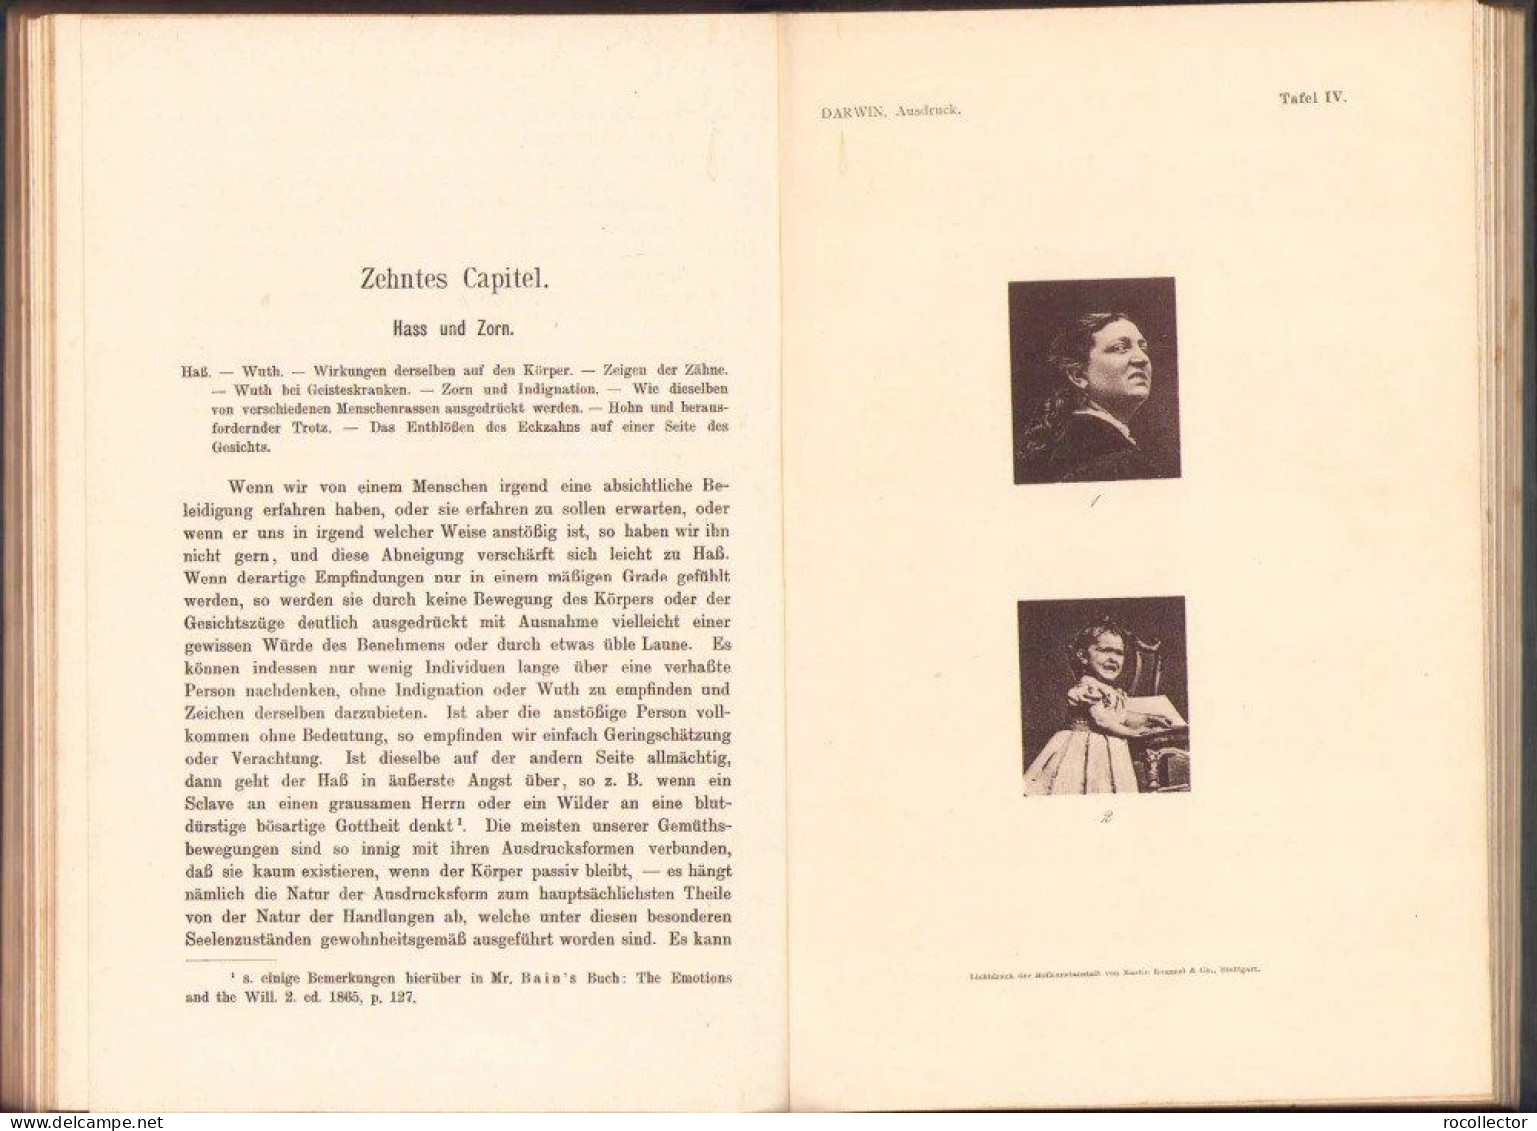 Der Ausdruck der Gemütsbewegungen bei dem Menschen und den Tieren von Charles Darwin, 1908, Stuttgart 318SP